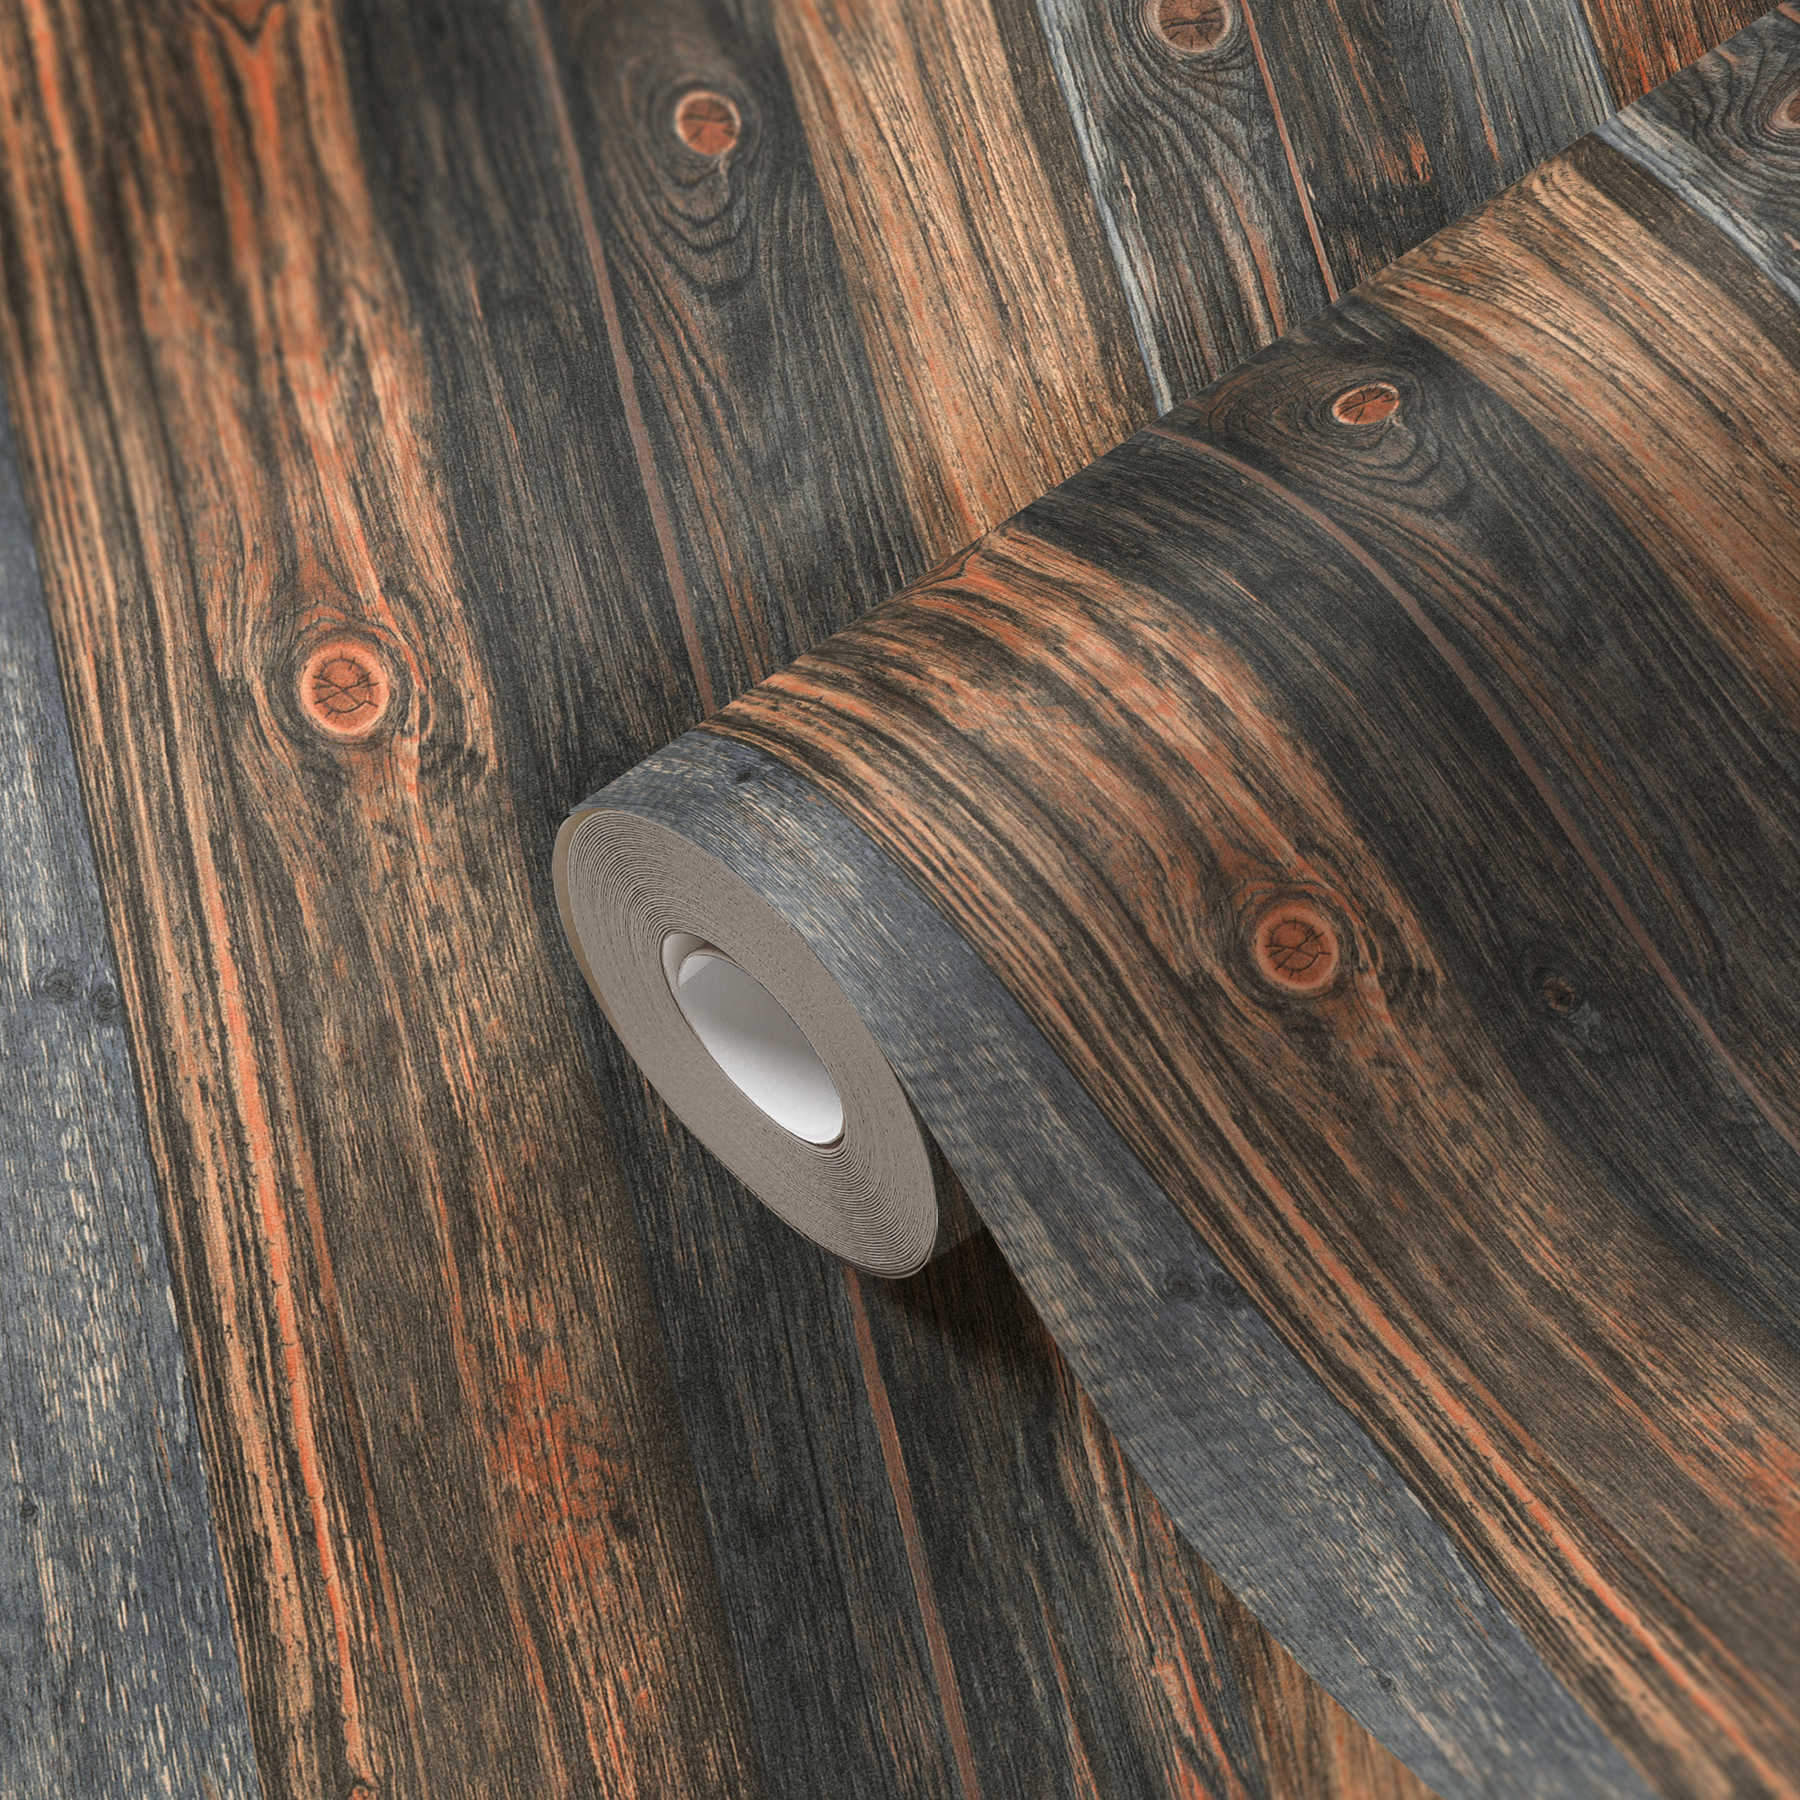             Papel pintado de madera con motivo de tablas, estructura y grano de madera - marrón, gris, beige
        